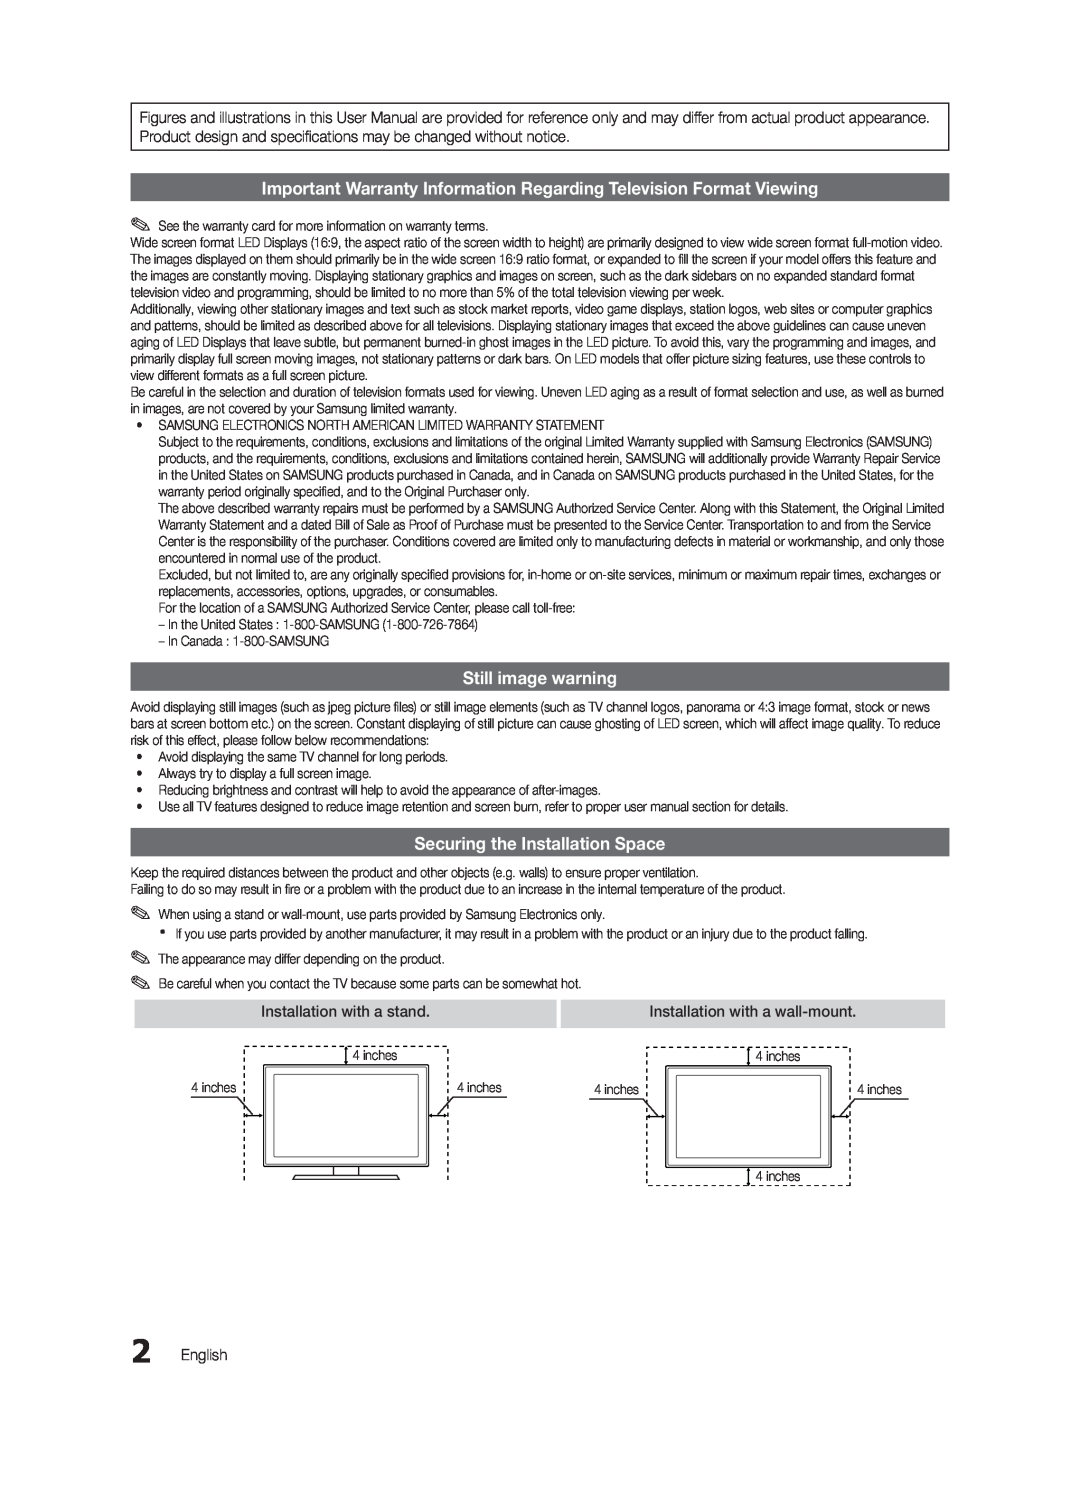 Samsung BN68-03165B-01 Important Warranty Information Regarding Television Format Viewing, Still image warning, English 